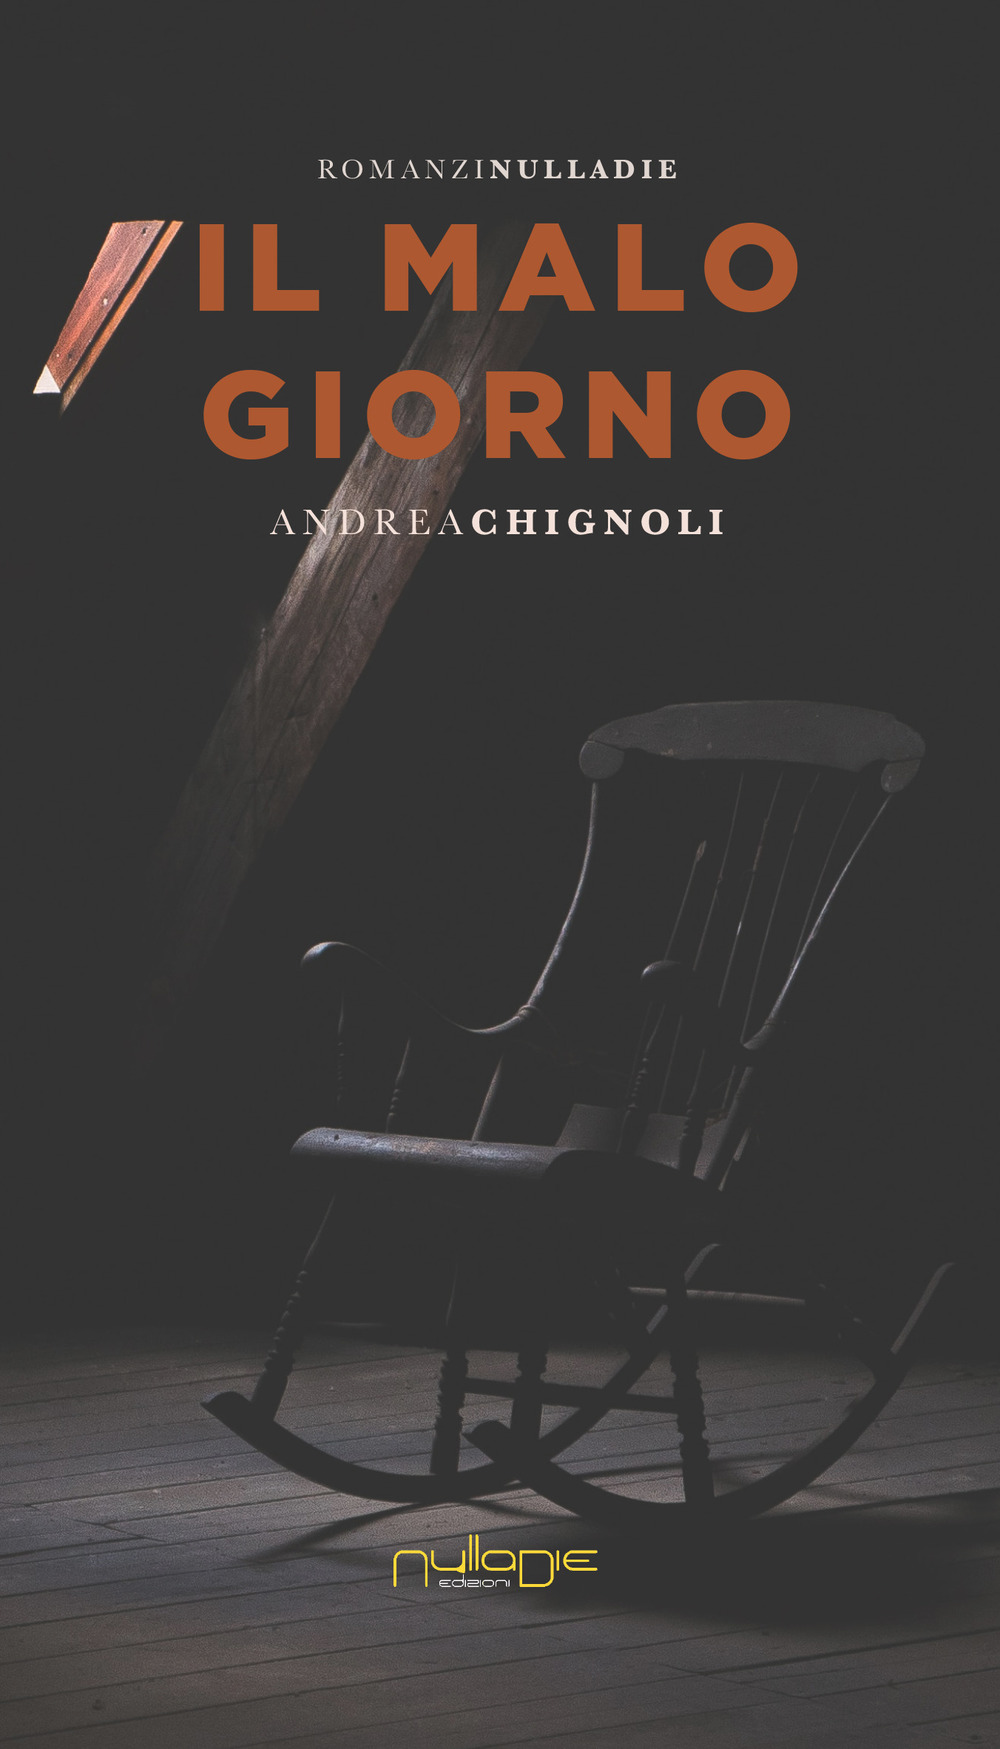 Libri Andrea Chignoli - Il Malo Giorno NUOVO SIGILLATO, EDIZIONE DEL 04/09/2019 SUBITO DISPONIBILE